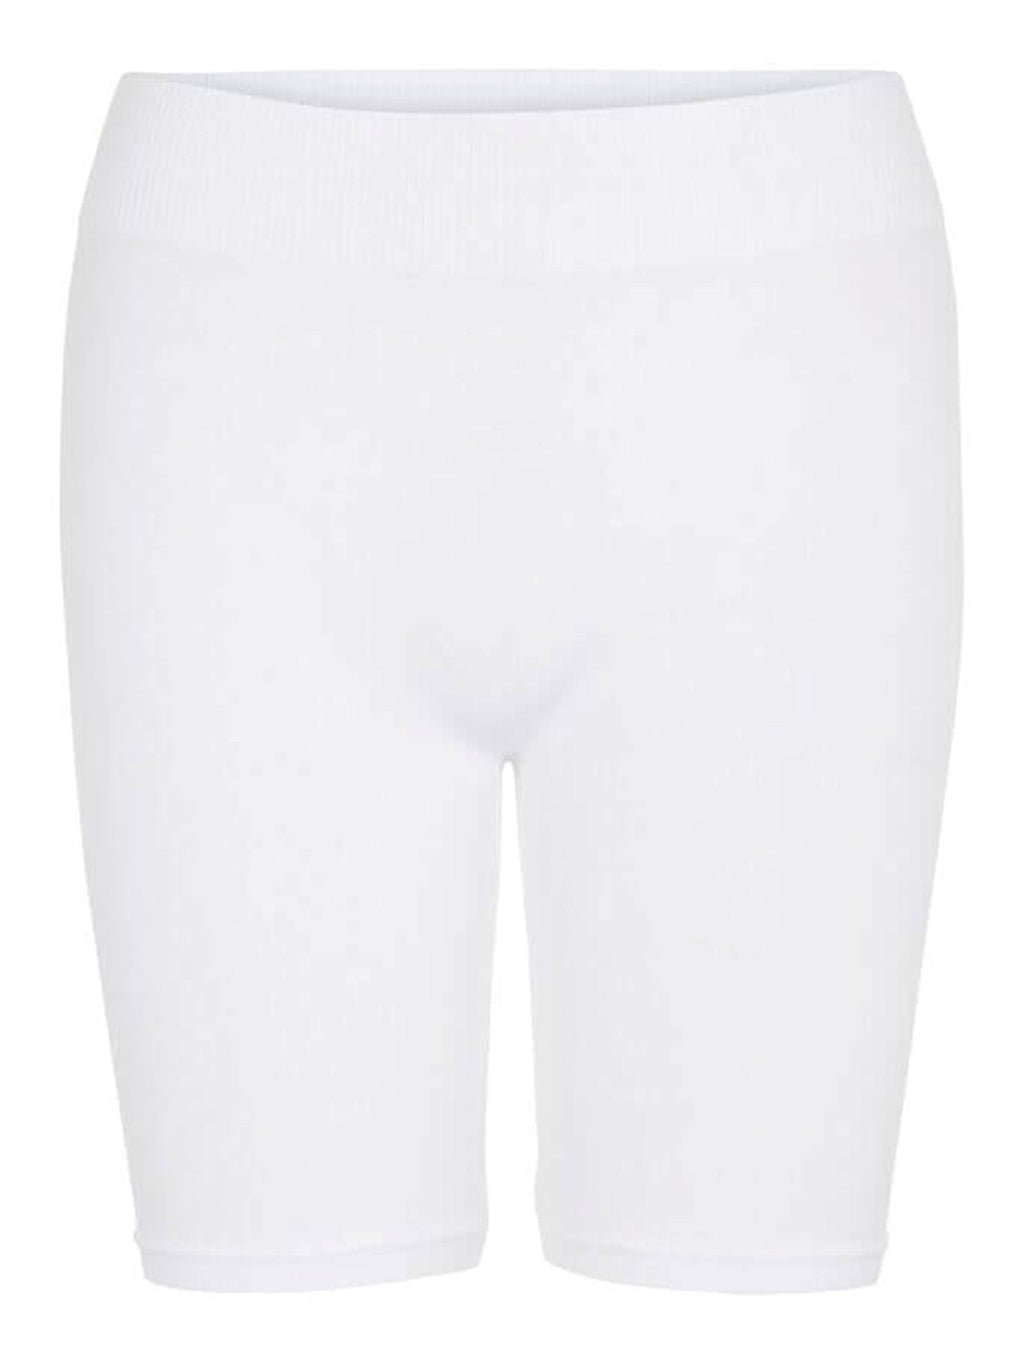 Shorts Midi de Londres - White